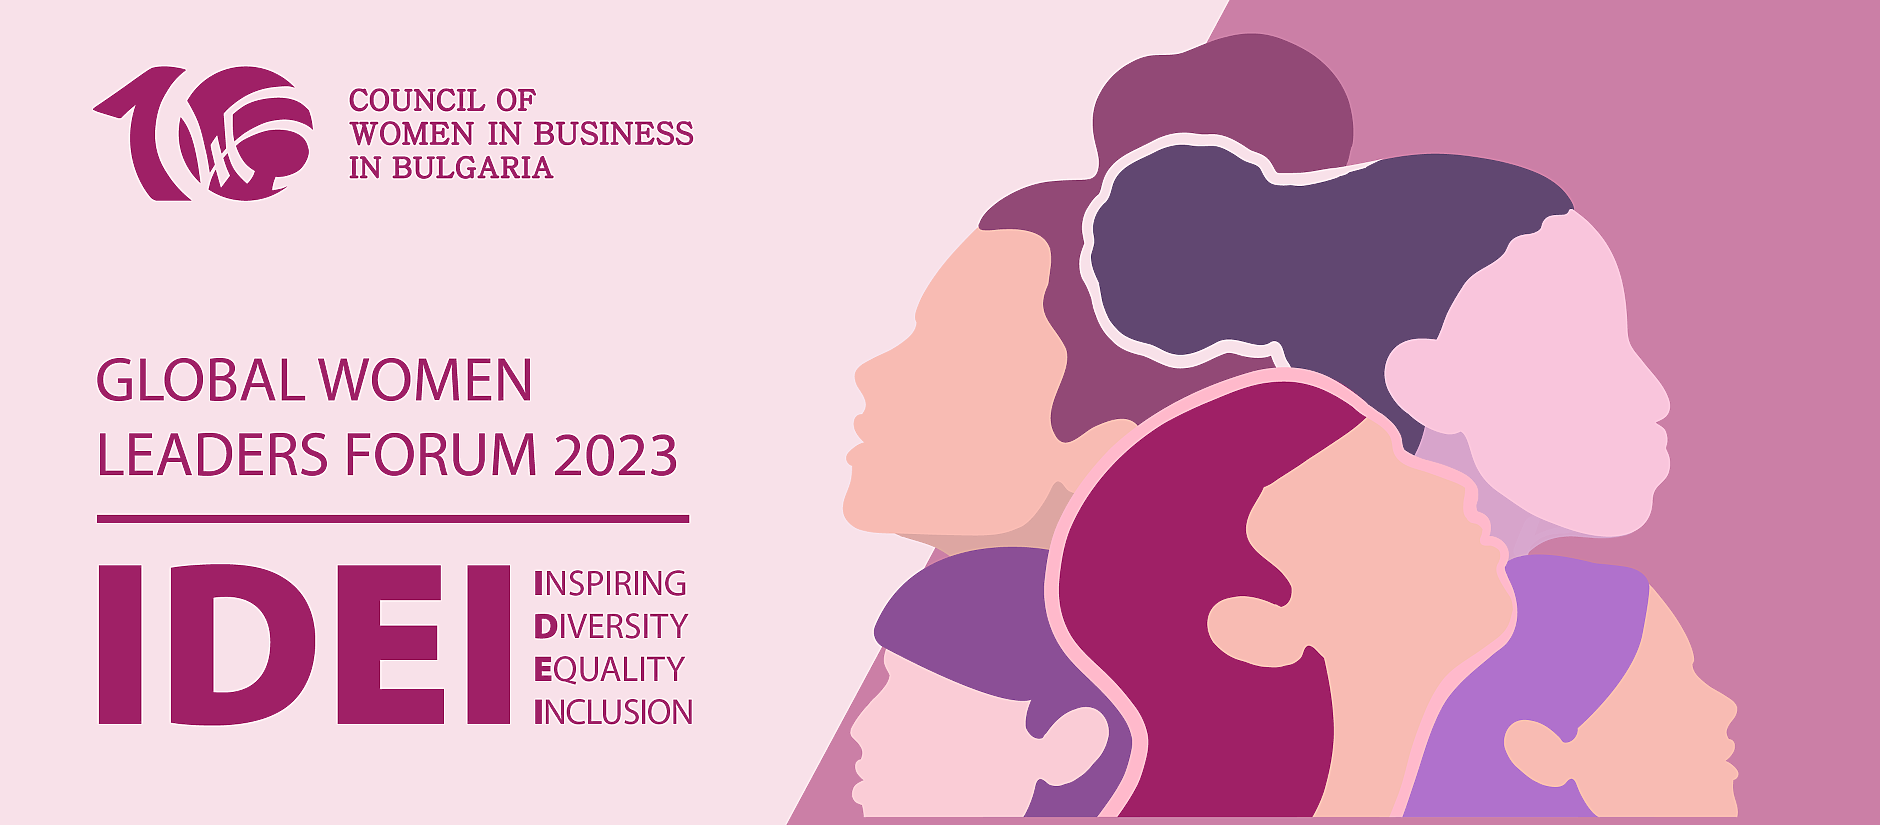 Глобален форум на жените лидери 2023 ще търси ефективни решения за постигане на равнопоставеност в работната среда и обществото у нас 